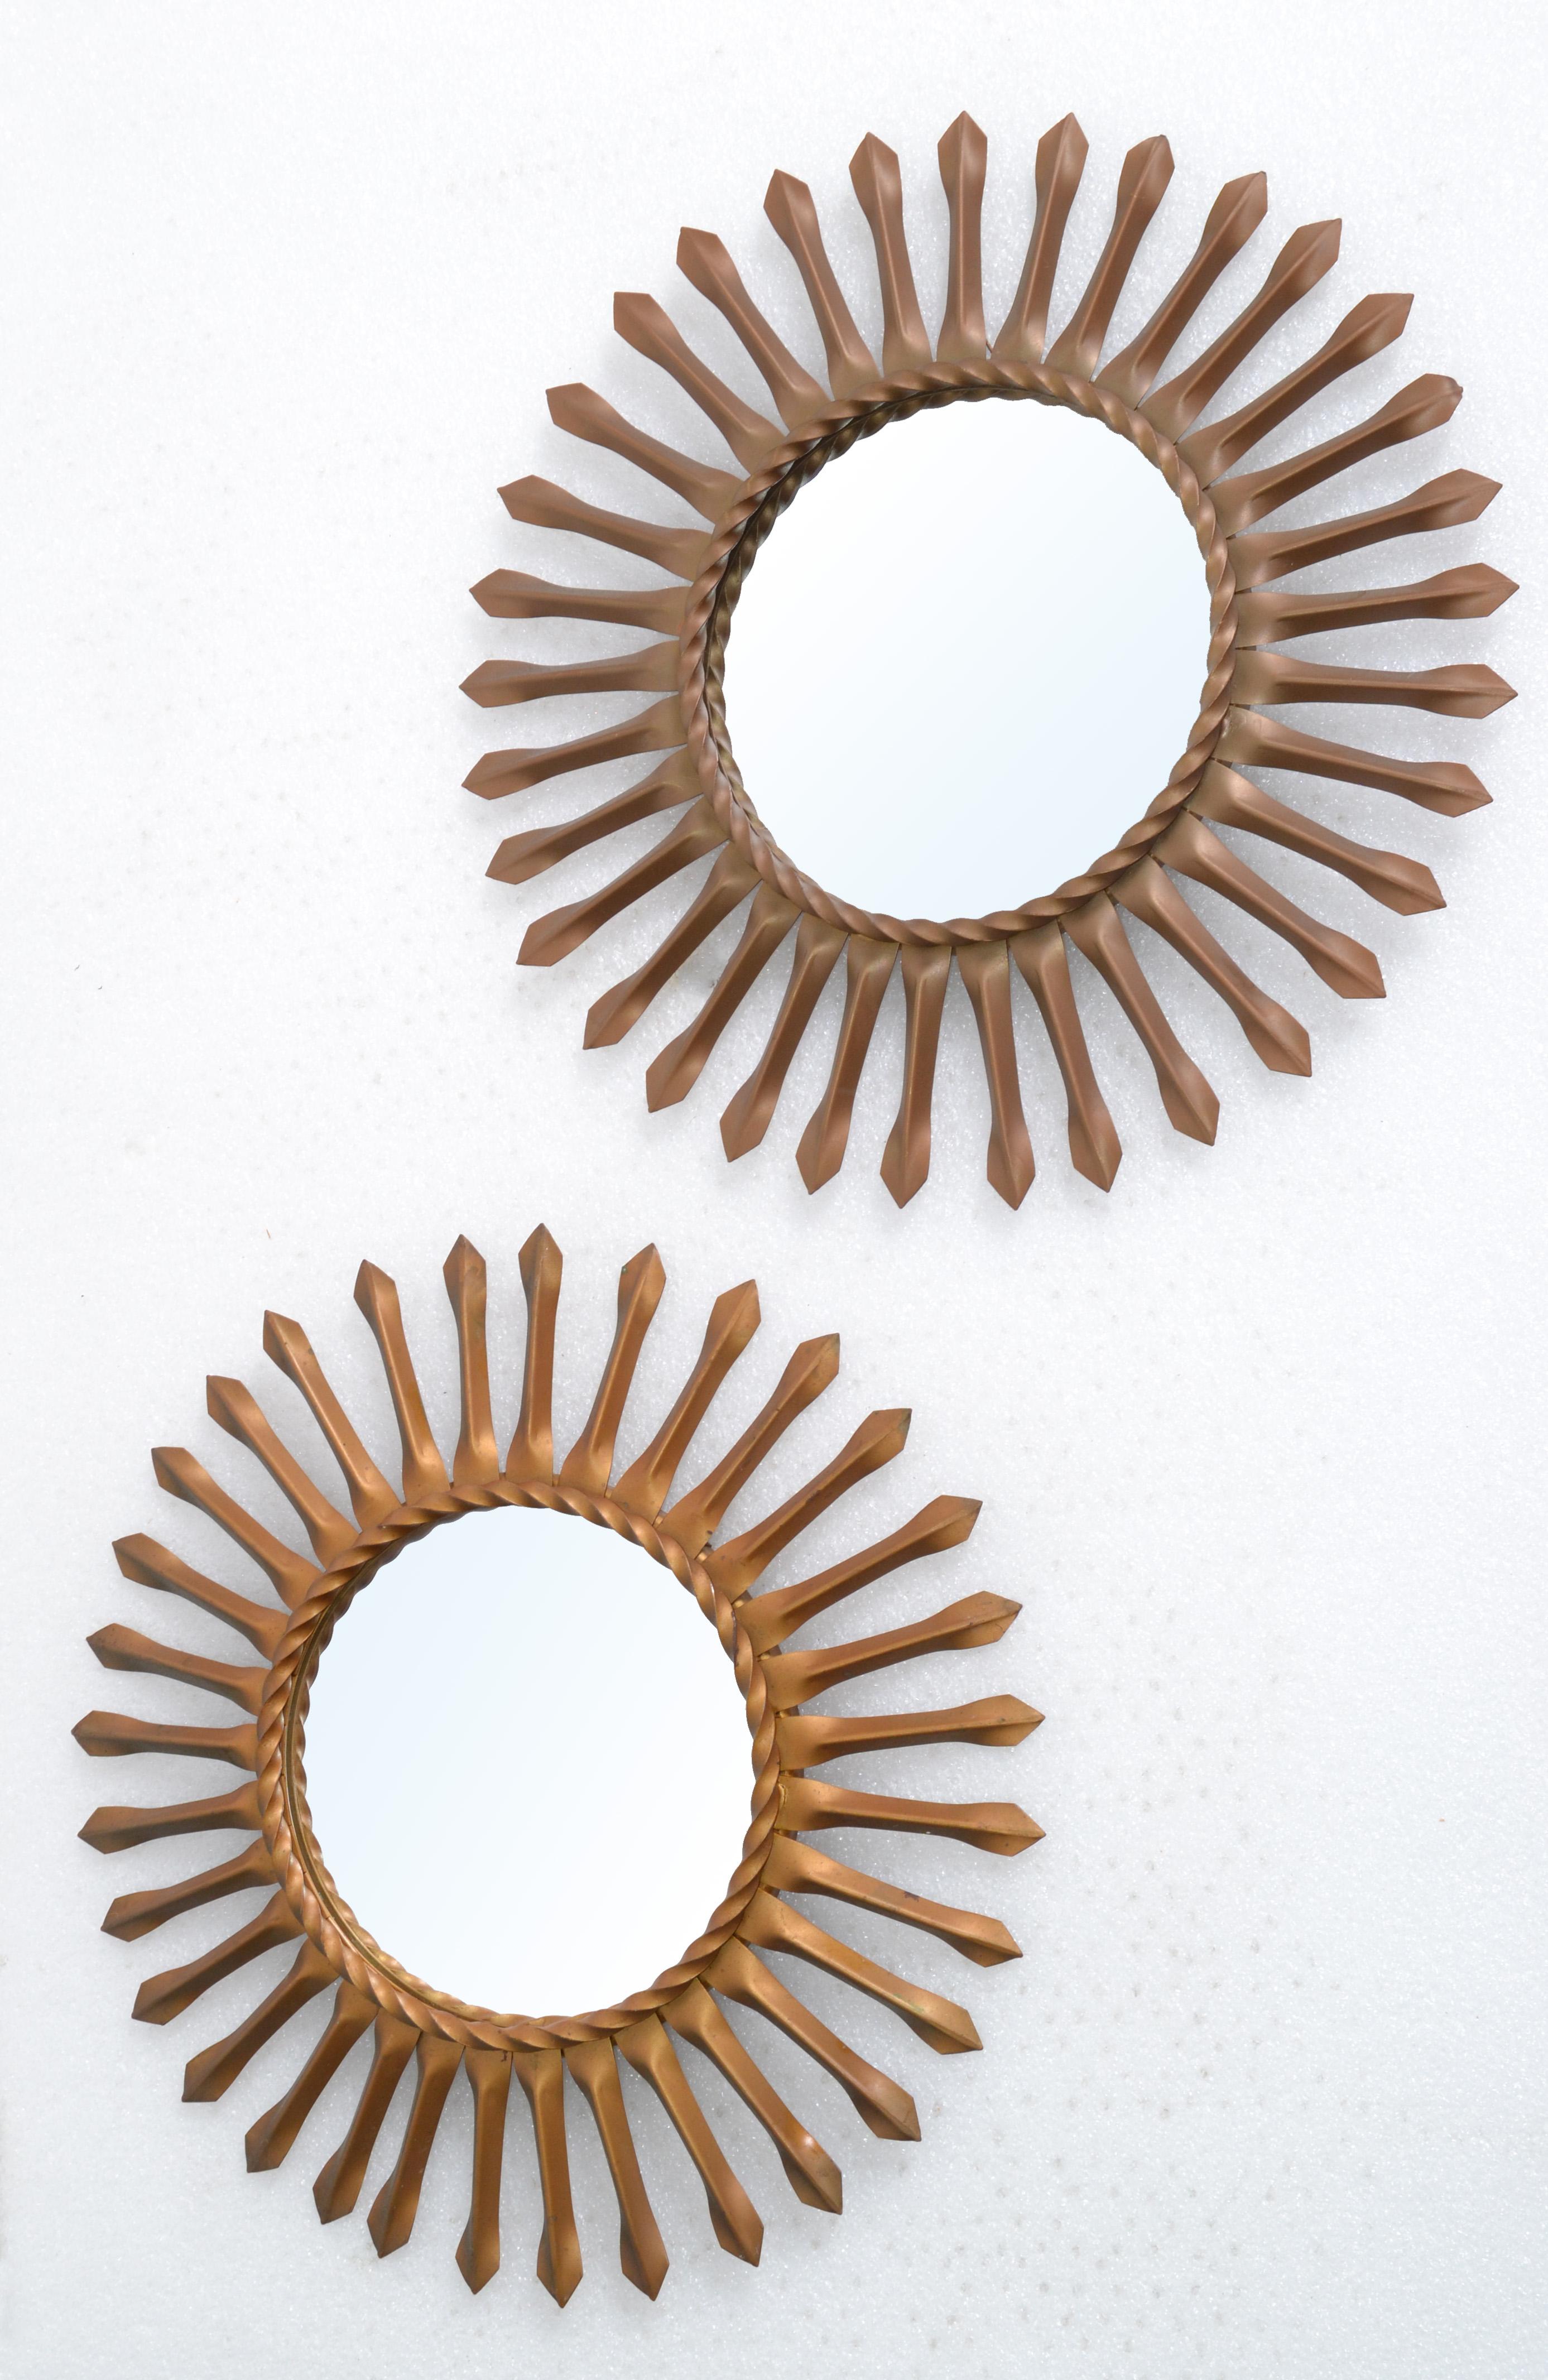 Du Sud de la France sont ces 2 miroirs muraux Sunburst signé sur le revers Chaty Vallauris.
Dans une finition or foncé avec un miroir plat de 5,5 pouces de diamètre.
Les deux sont signés au dos.